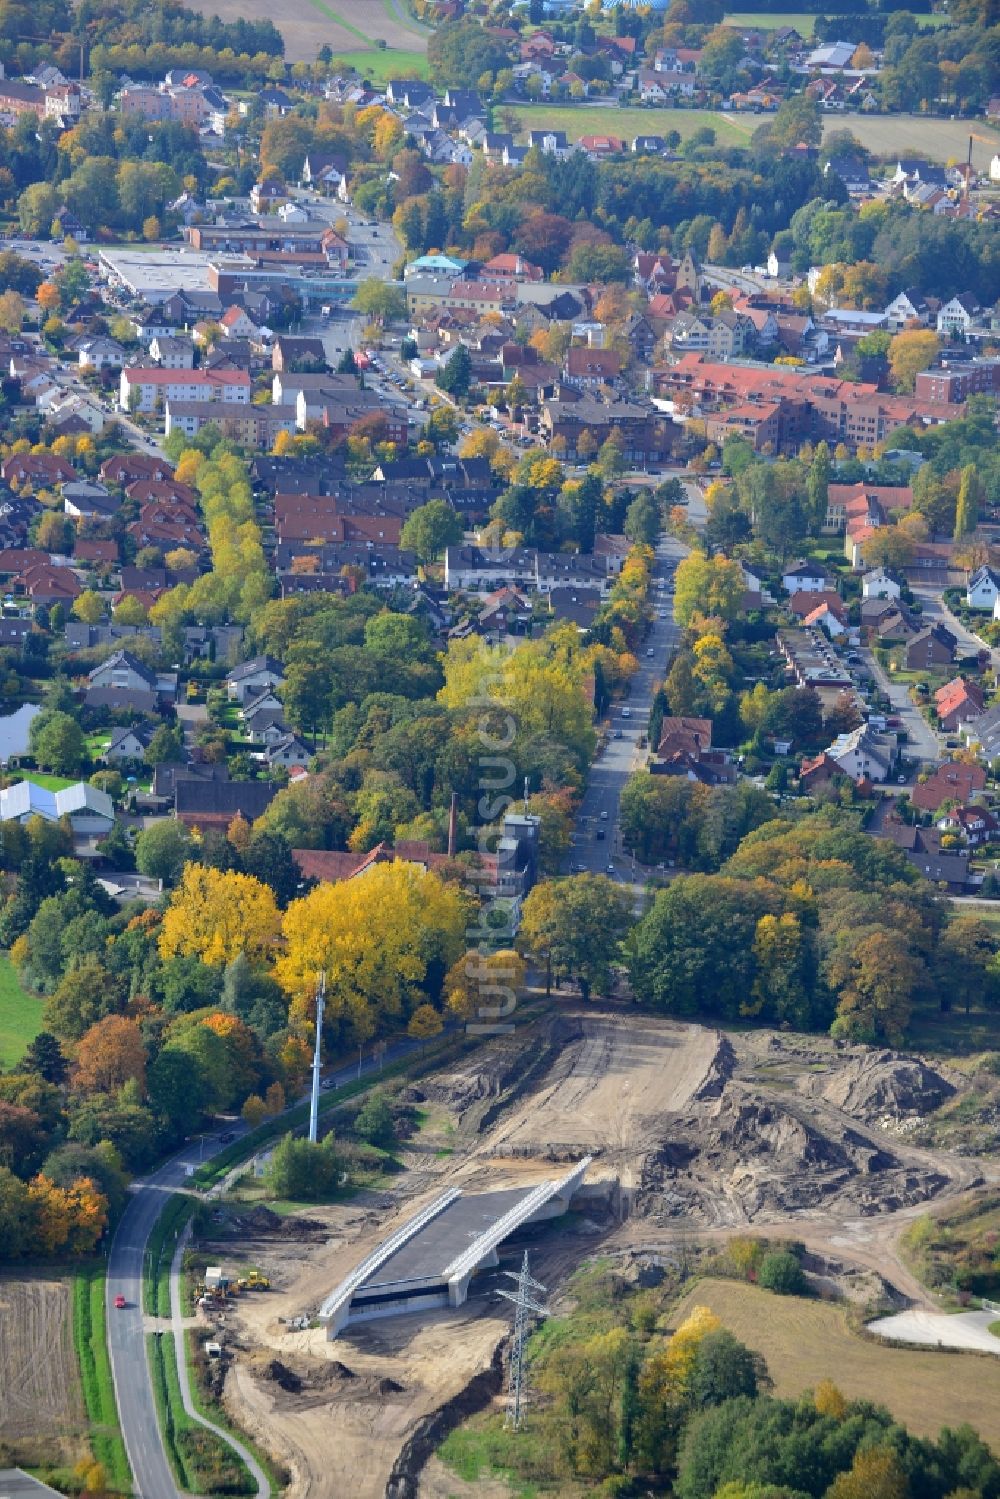 Steinhagen aus der Vogelperspektive: Baustellen zur Erweiterung der Bundesautobahn A33 in Steinhagen in Nordrhein-Westfalen